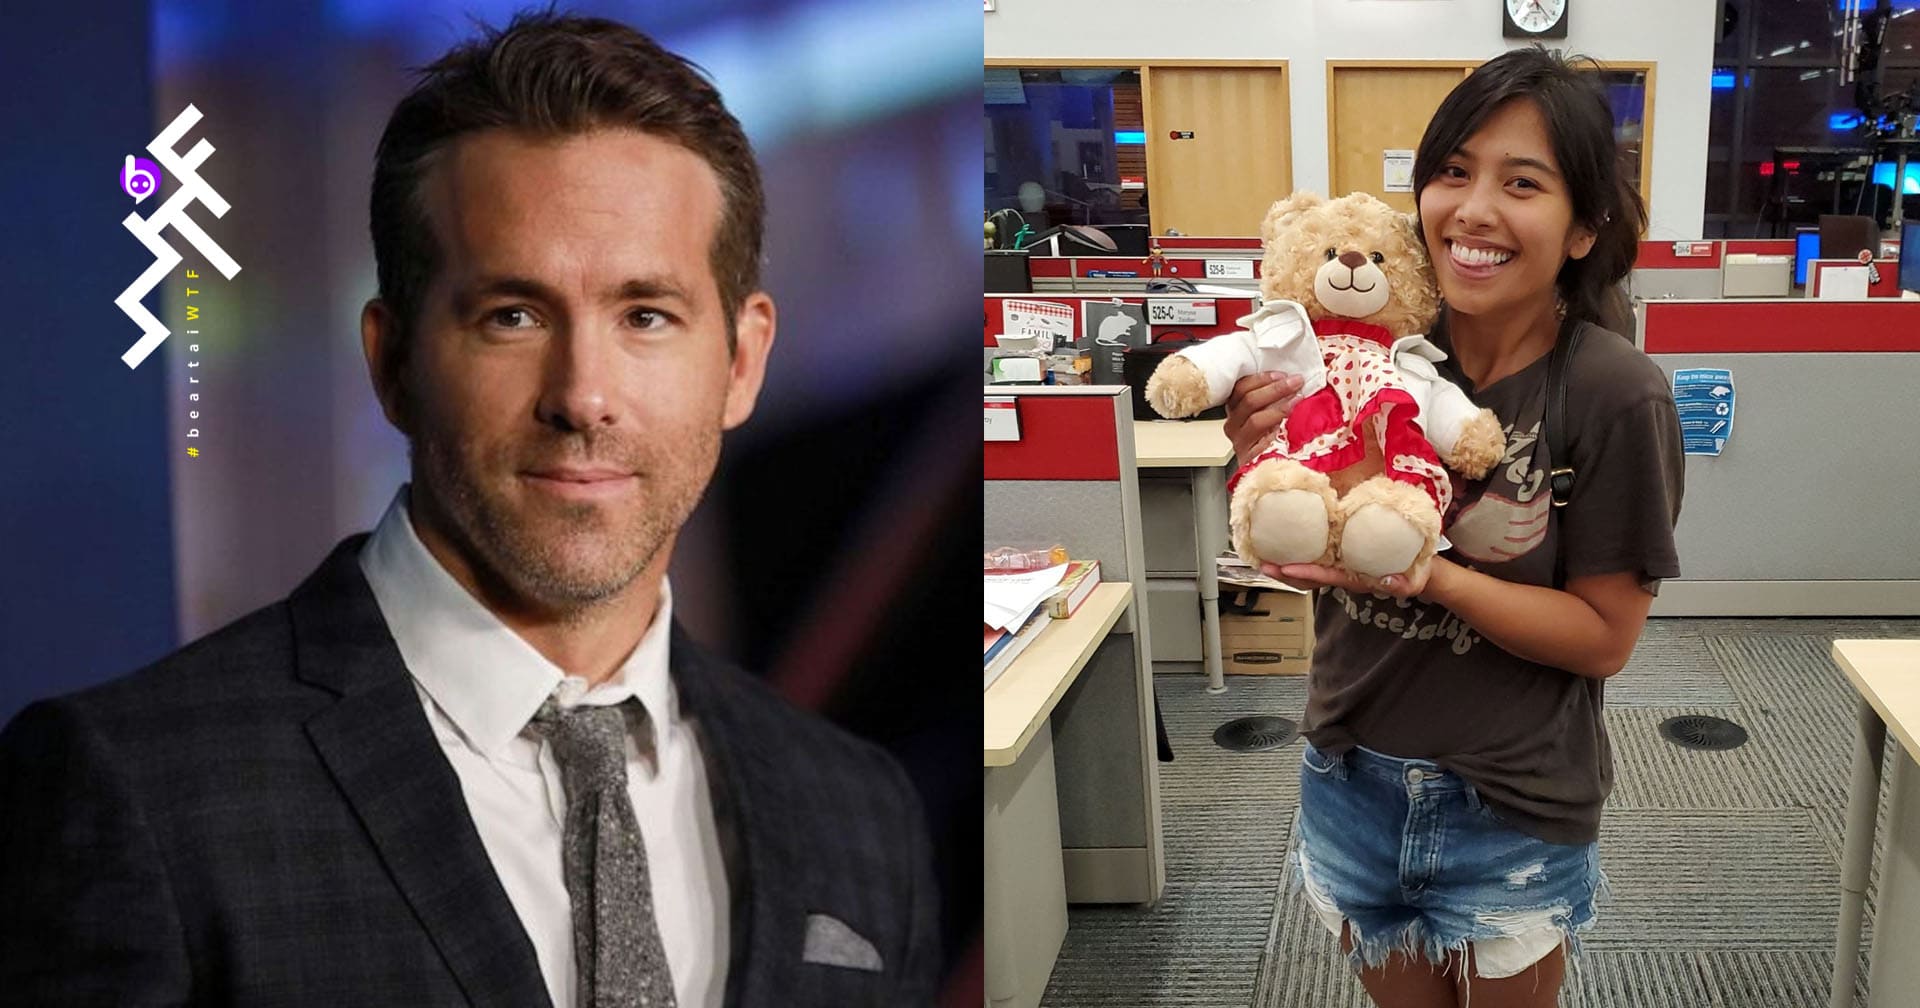 พระเอกตัวจริง Ryan Reynolds ช่วยตามหาตุ๊กตาหมีของสาวแคนาดาที่บันทึก “เสียงสุดท้ายของแม่” เอาไว้